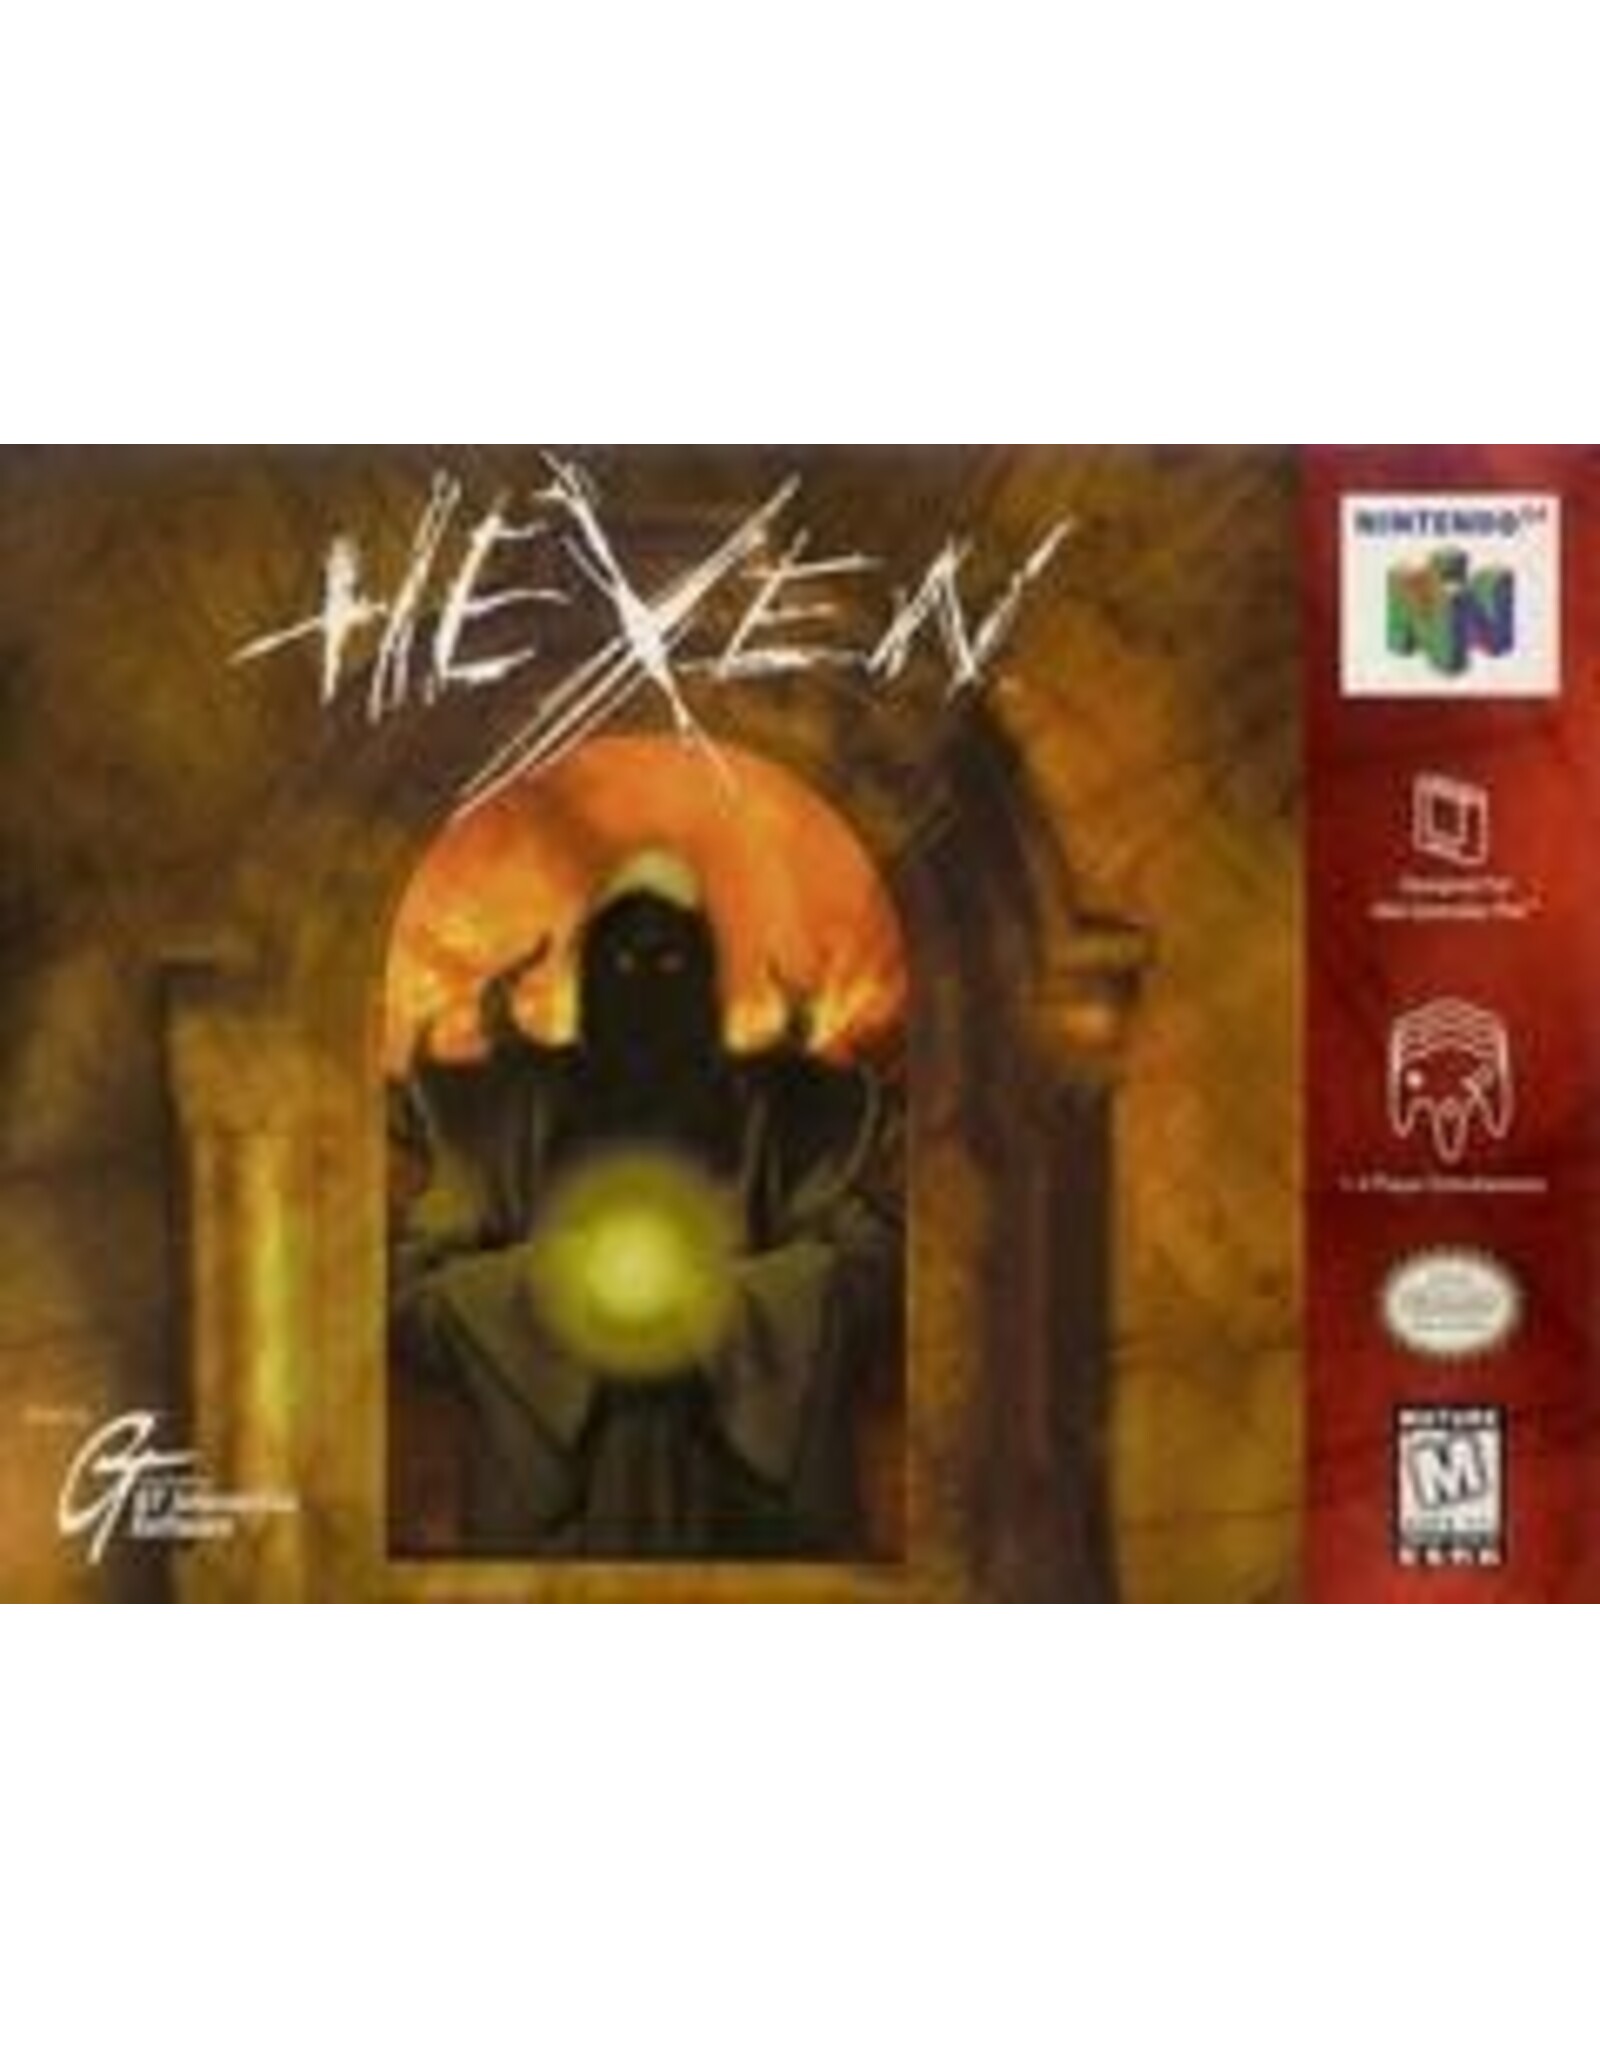 Nintendo 64 Hexen (Cart Only)